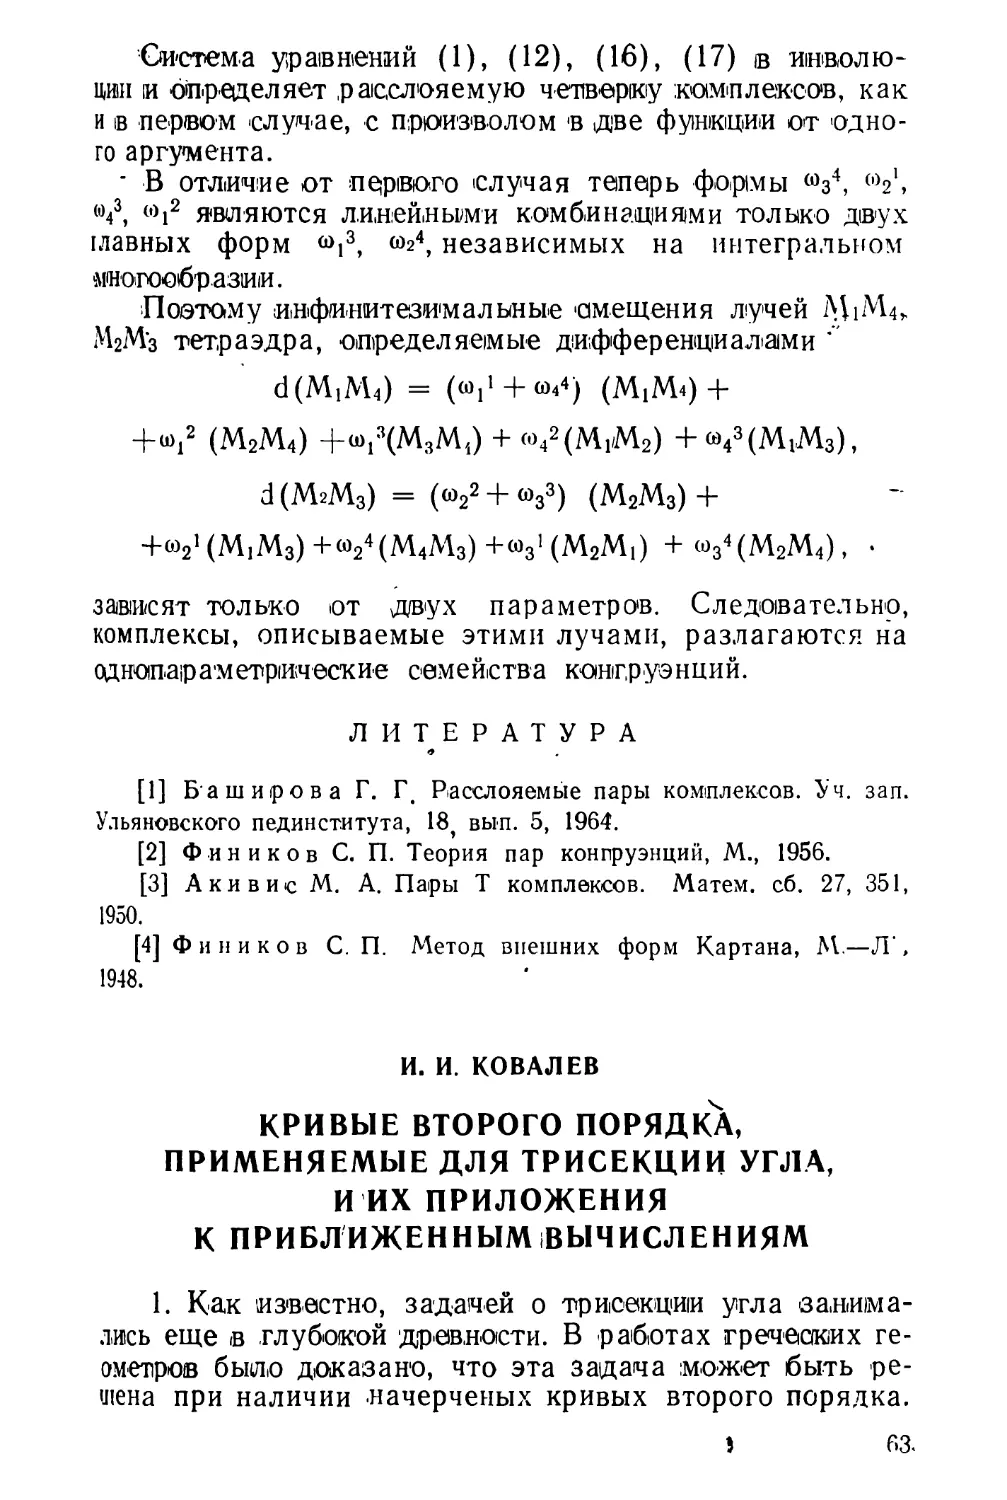 И. И. Ковалев. Кривые второго порядка, применяемые для трисекции угла, и их приложения к приближенным вычислениям